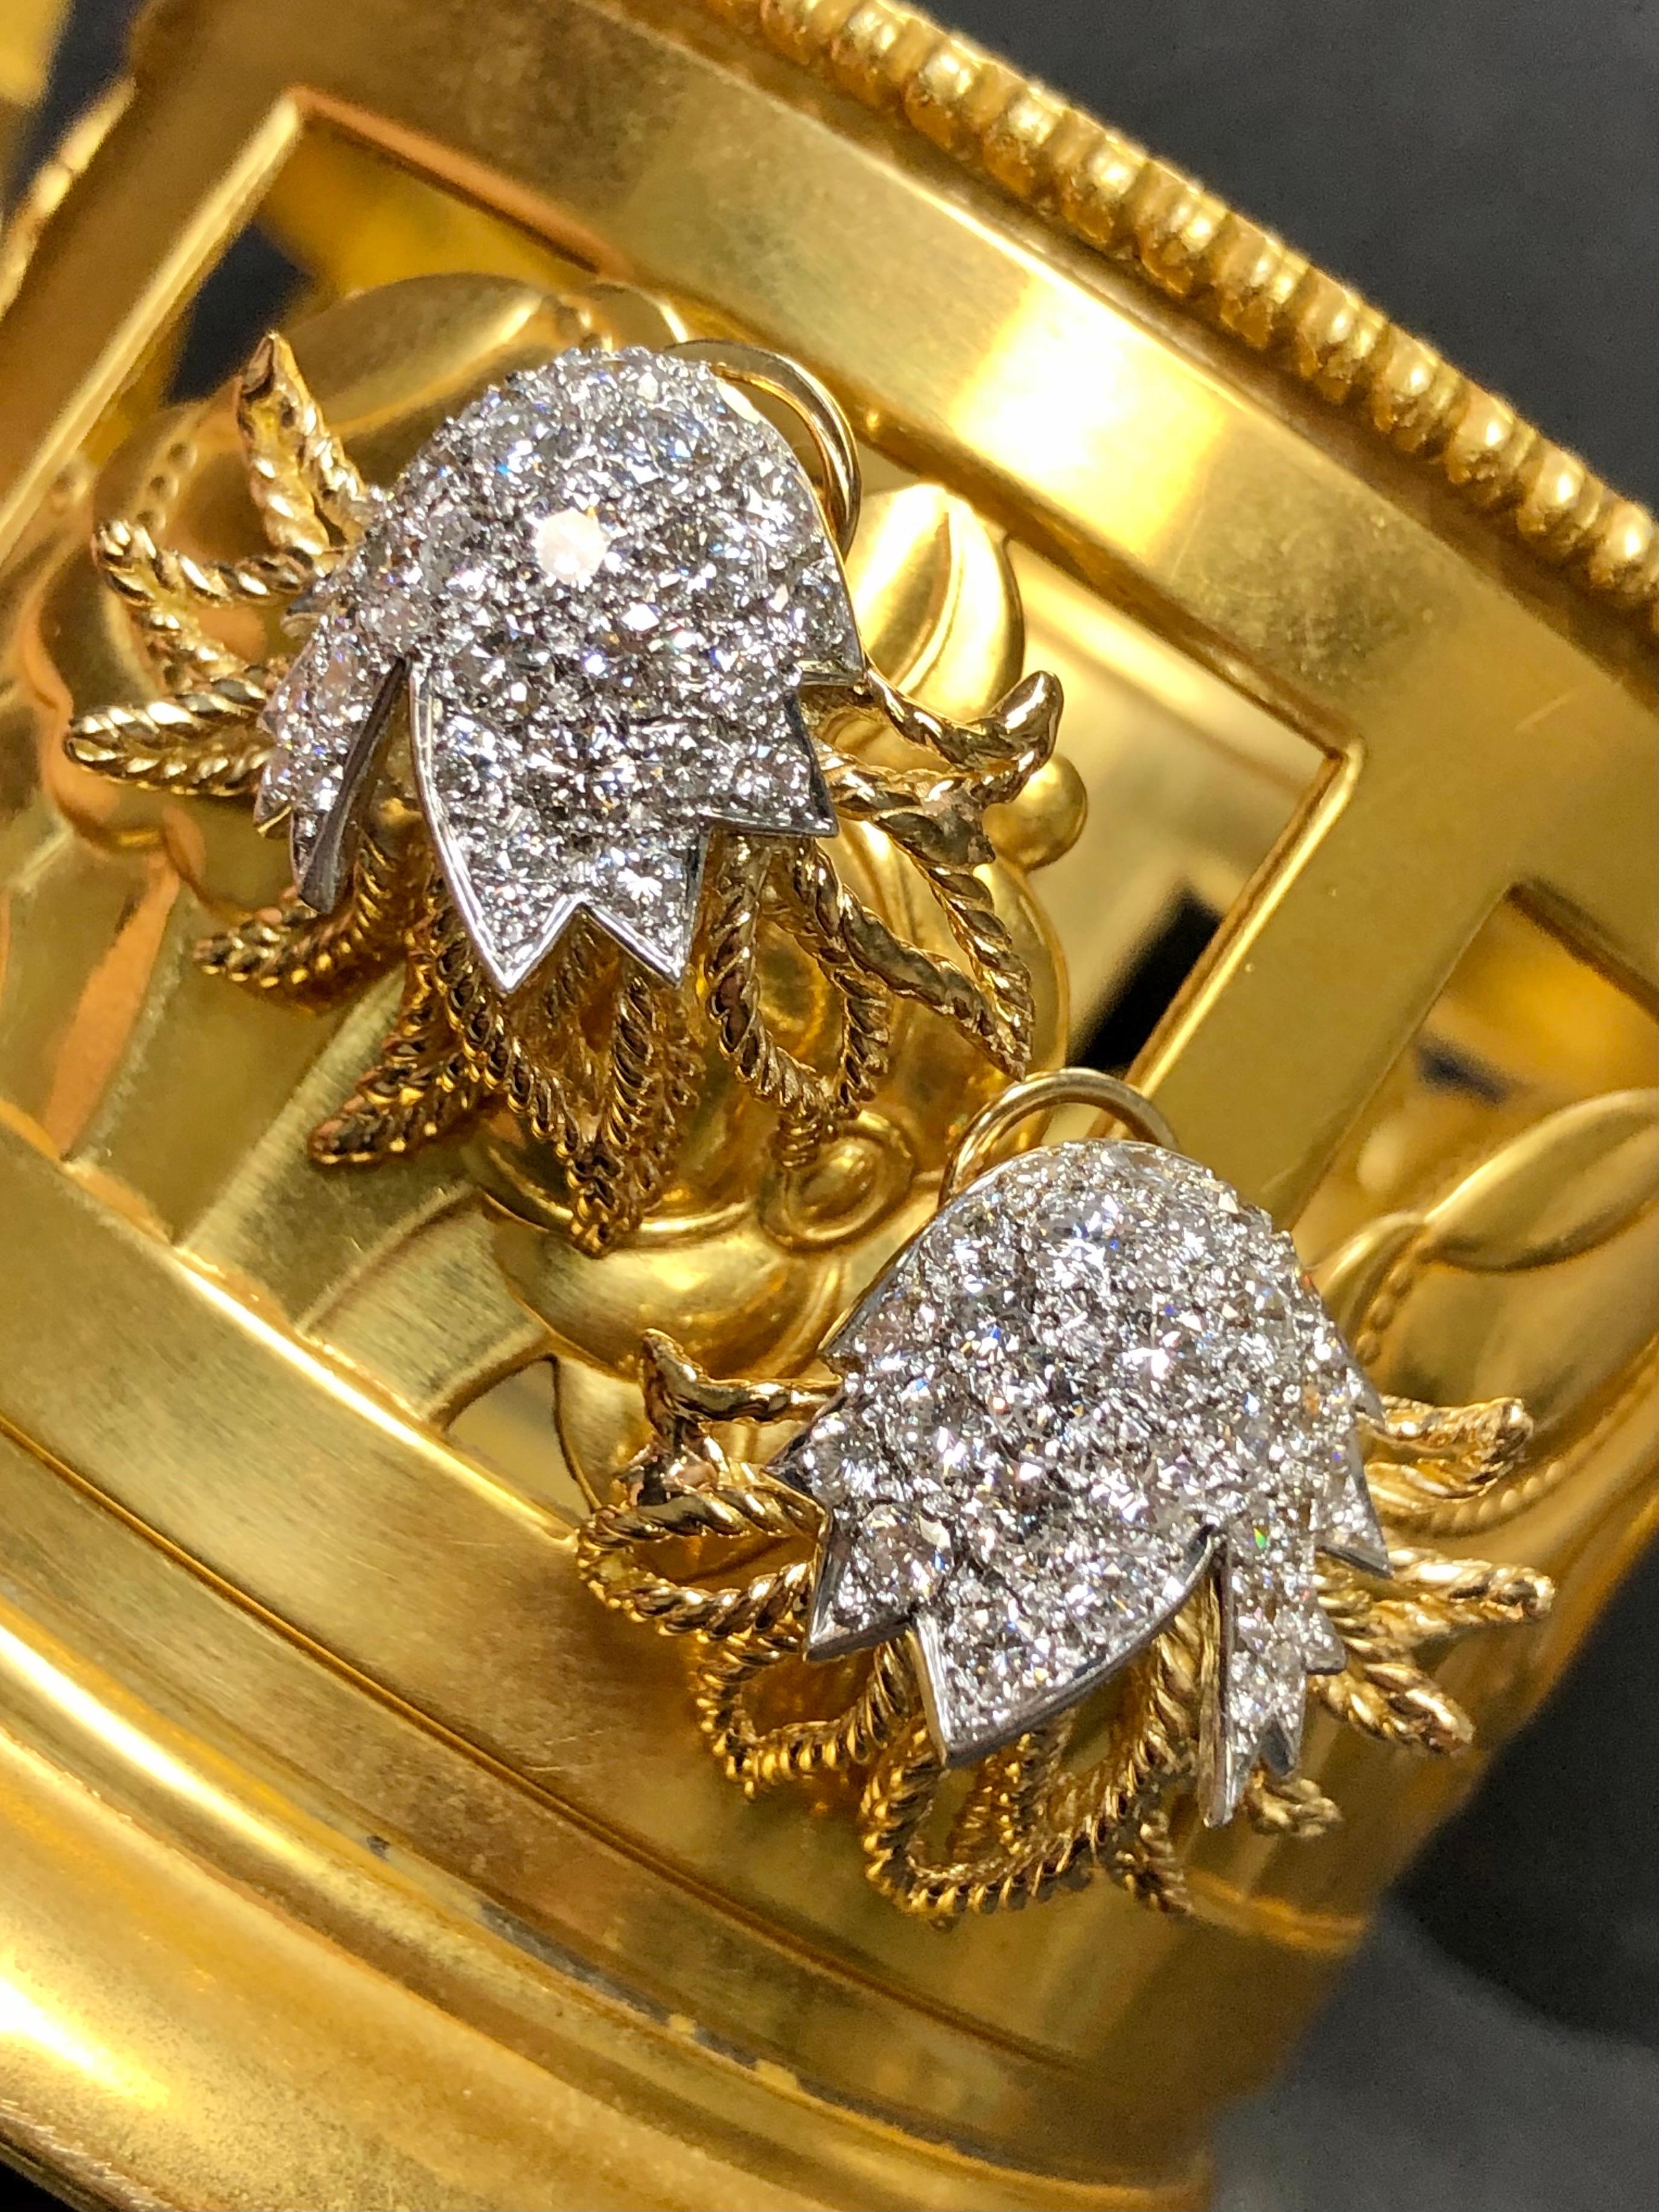 Diese fabelhaften Ohrringe schreien geradezu nach Vintage! Vom Design über die Qualität der Diamanten bis hin zur Rückseite, auf der Sie die makellose Azurierung des Metalls sehen können. Sie sind handgefertigt in 18K Gelbgold und Platin und pavè